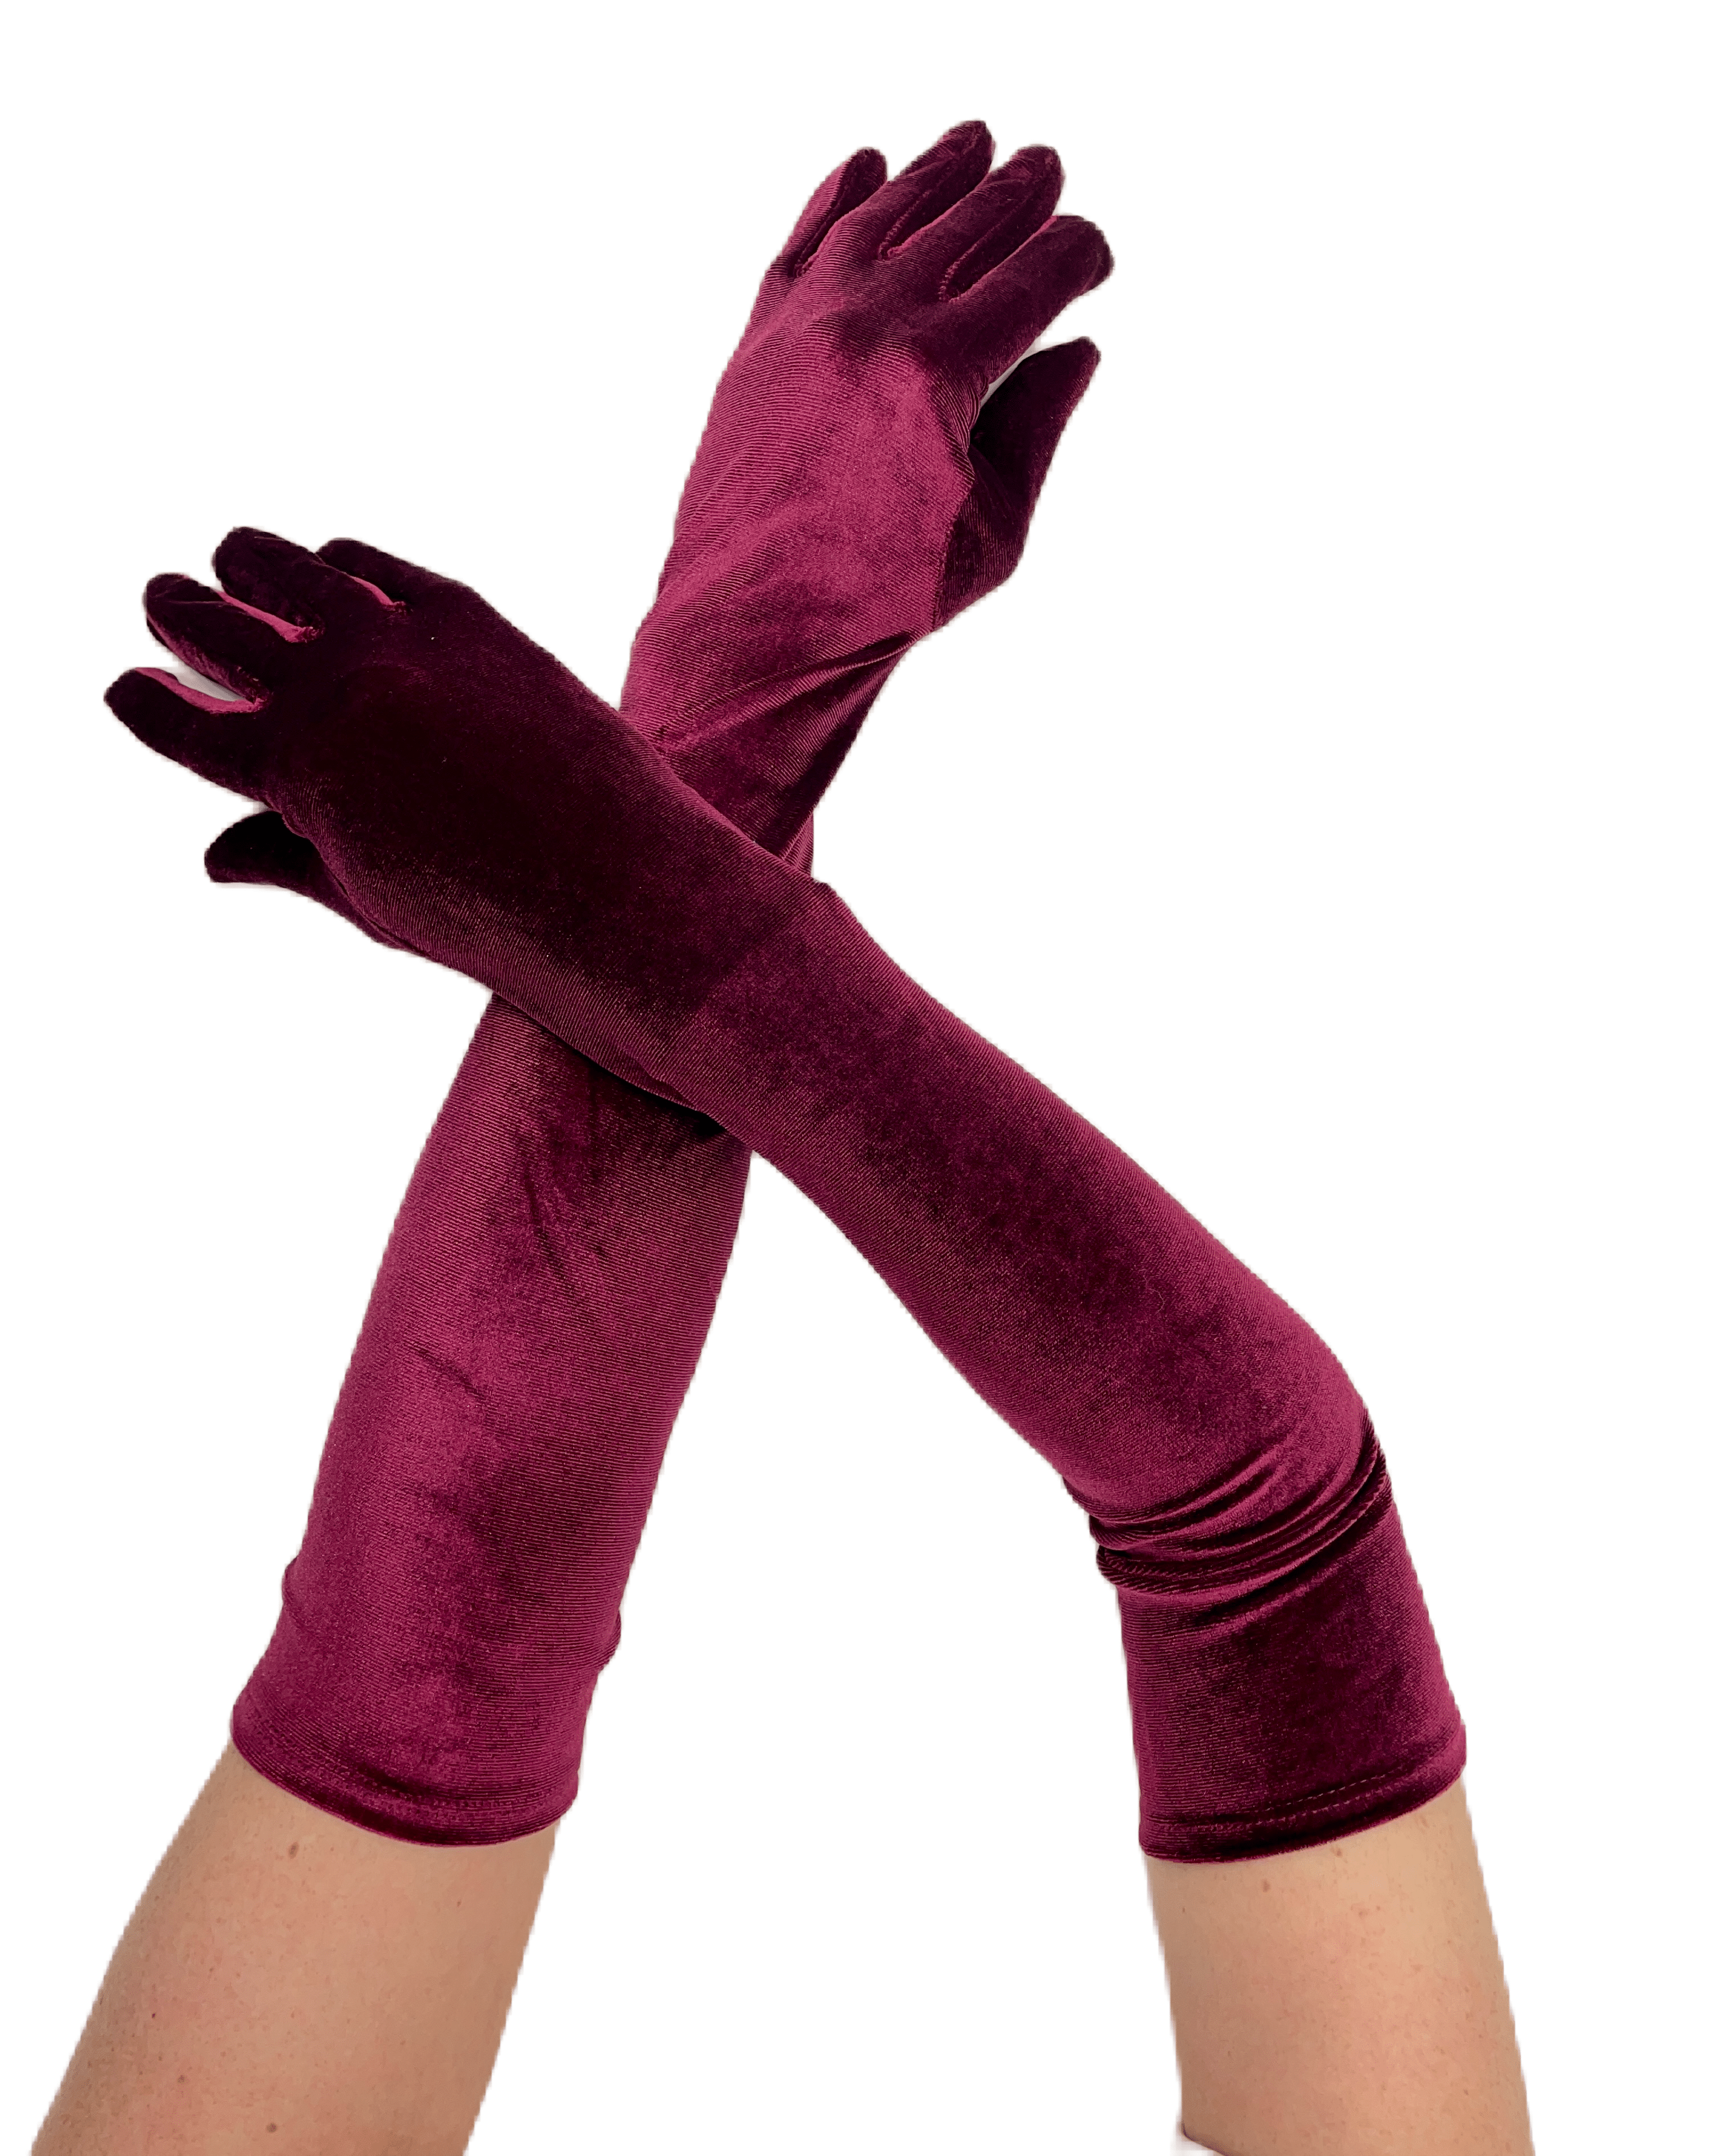 Официални дълги ръкавици в богат бордо цвят, перфектни за добавяне на финален елегантен акцент към вашето облекло.